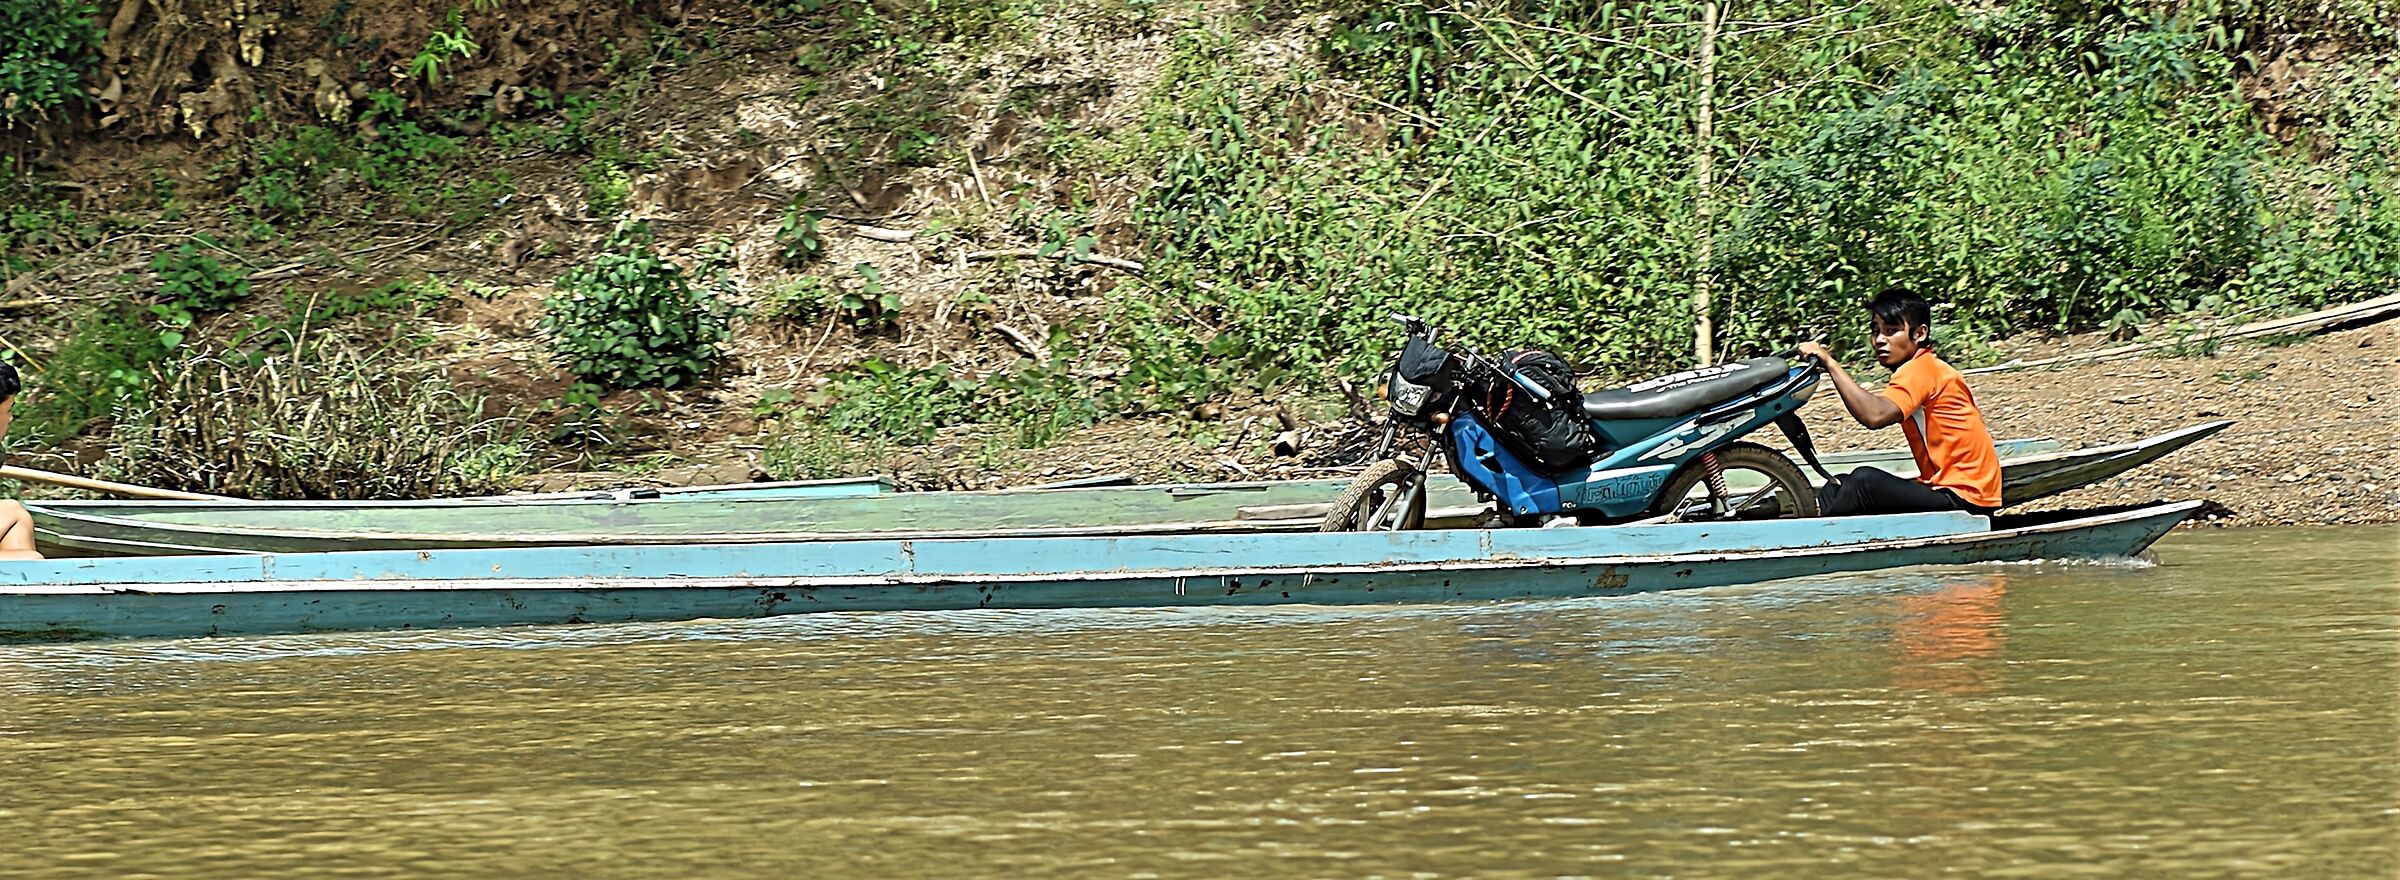 Jet ski on the Mekong...